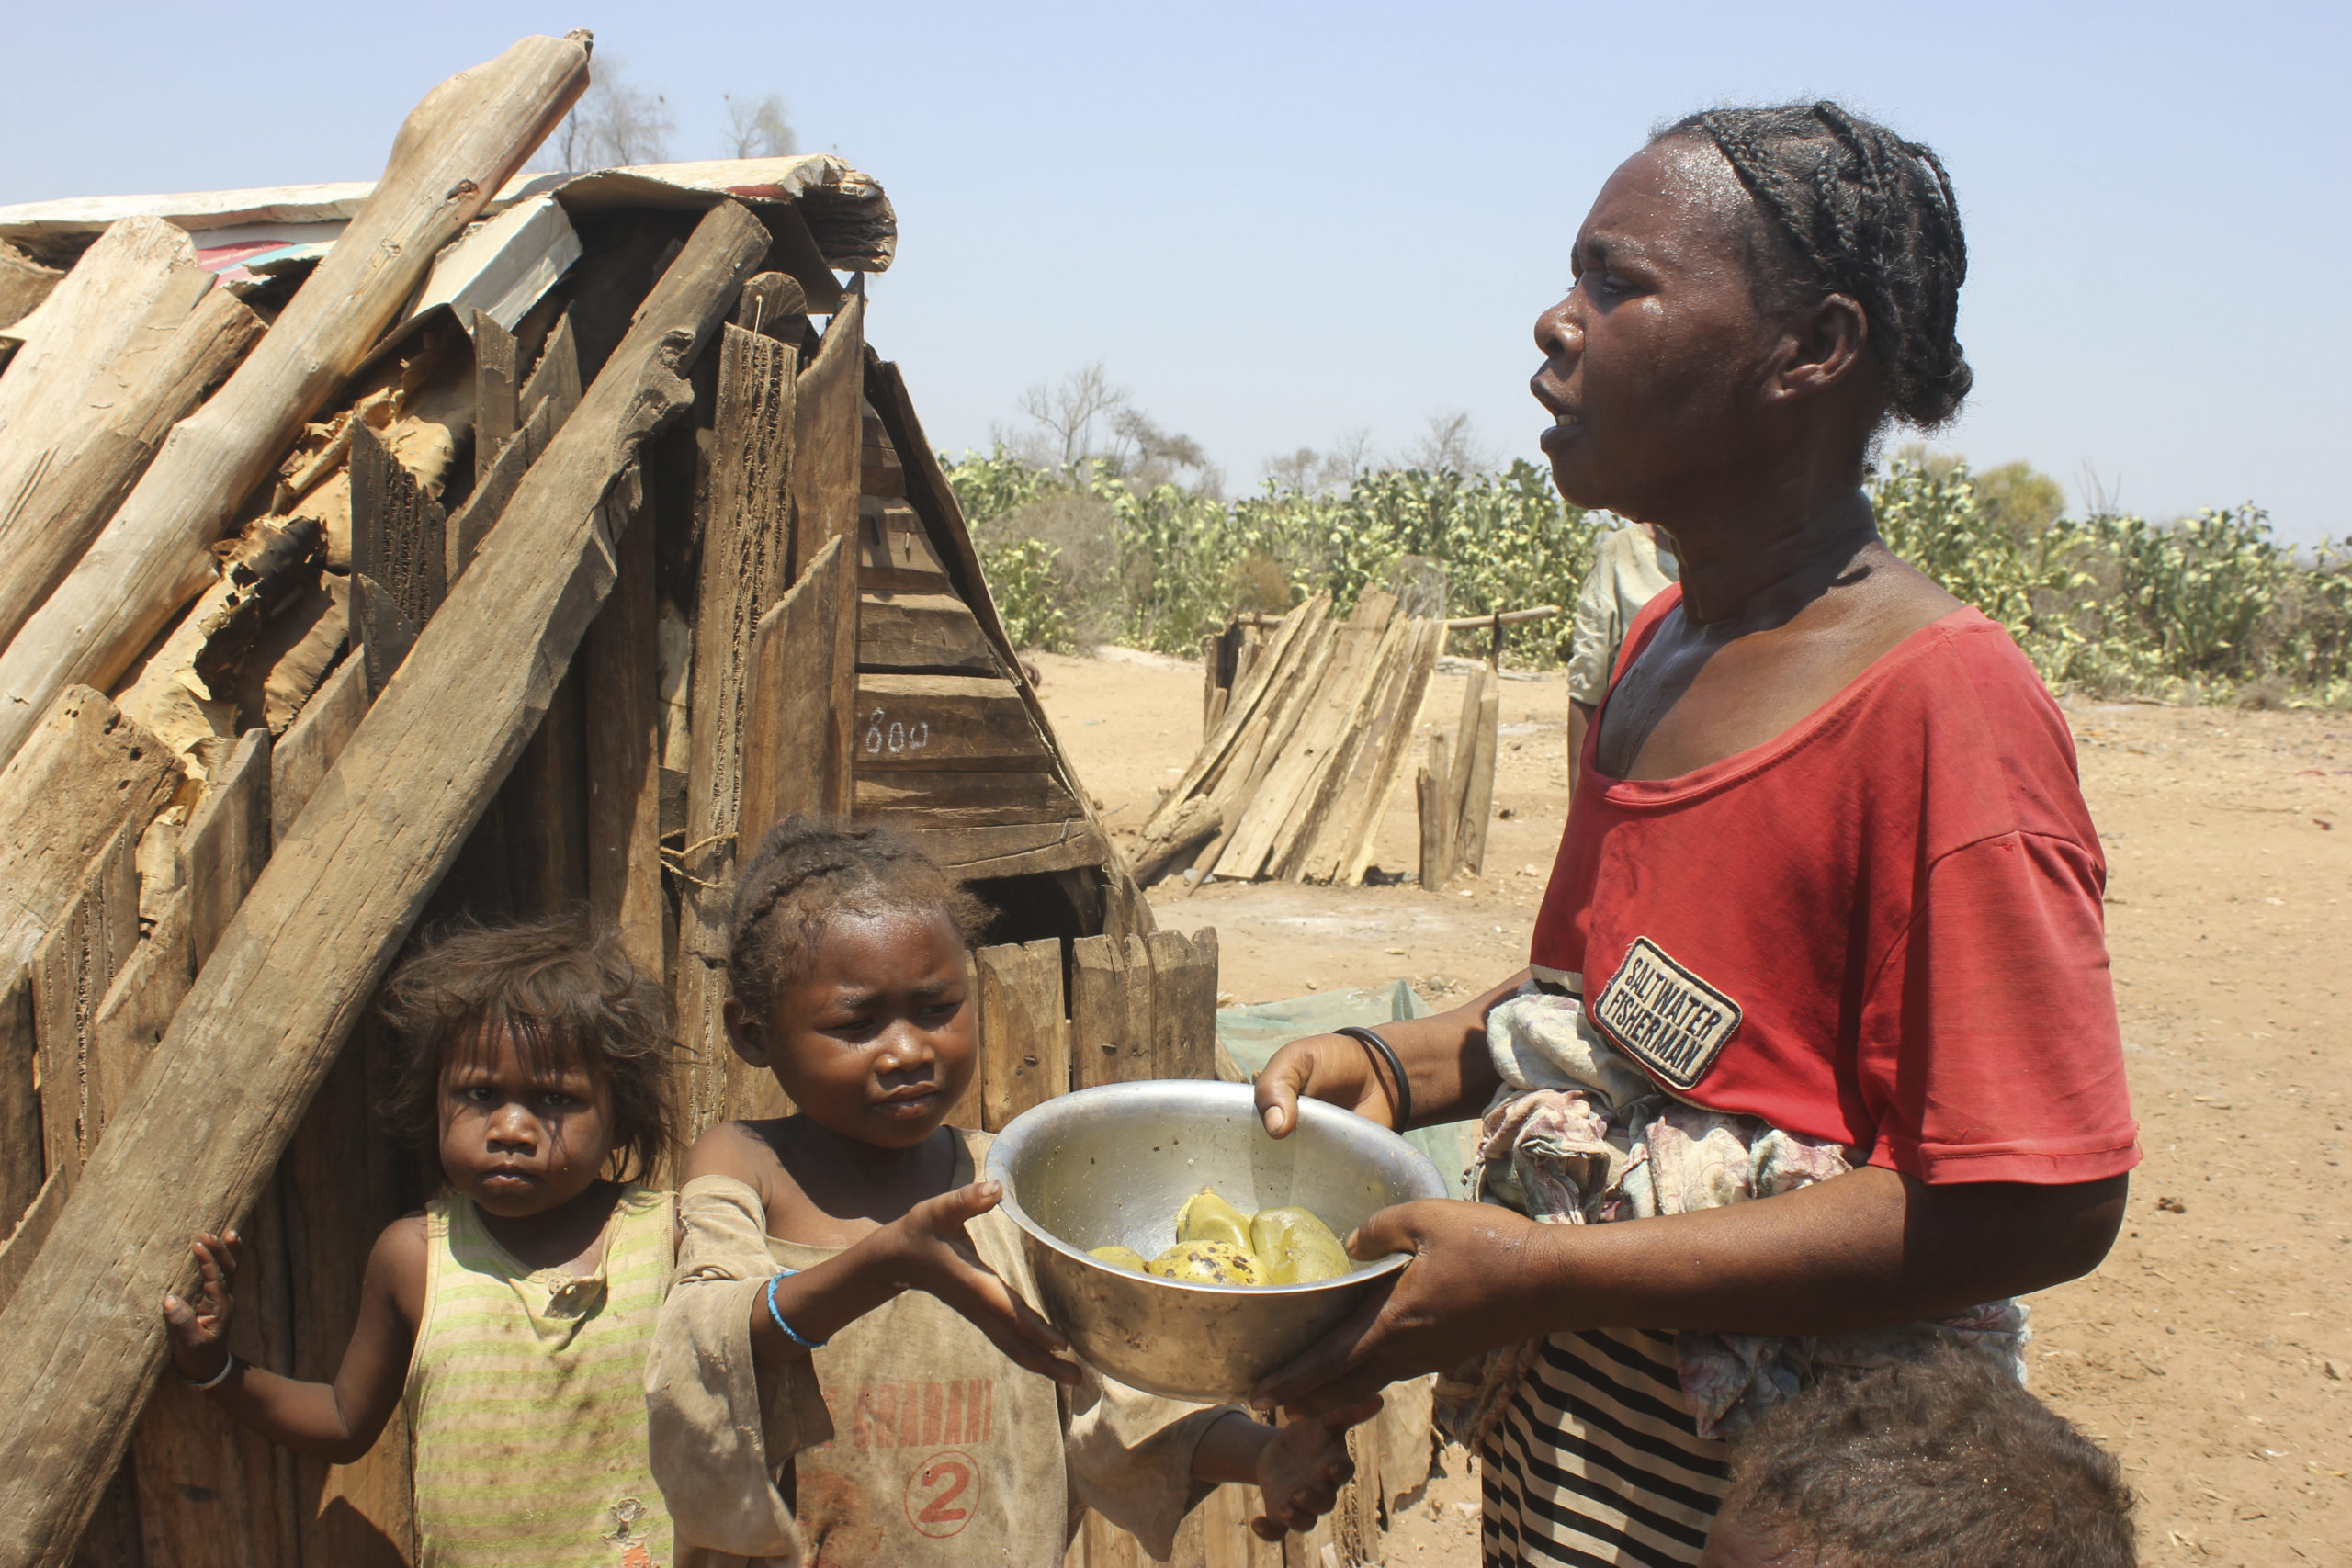 Η πείνα συνεχίζει να αυξάνεται σε πολλά μέρη του κόσμου – Απομακρύνεται ο στόχος για την καταπολέμησή της